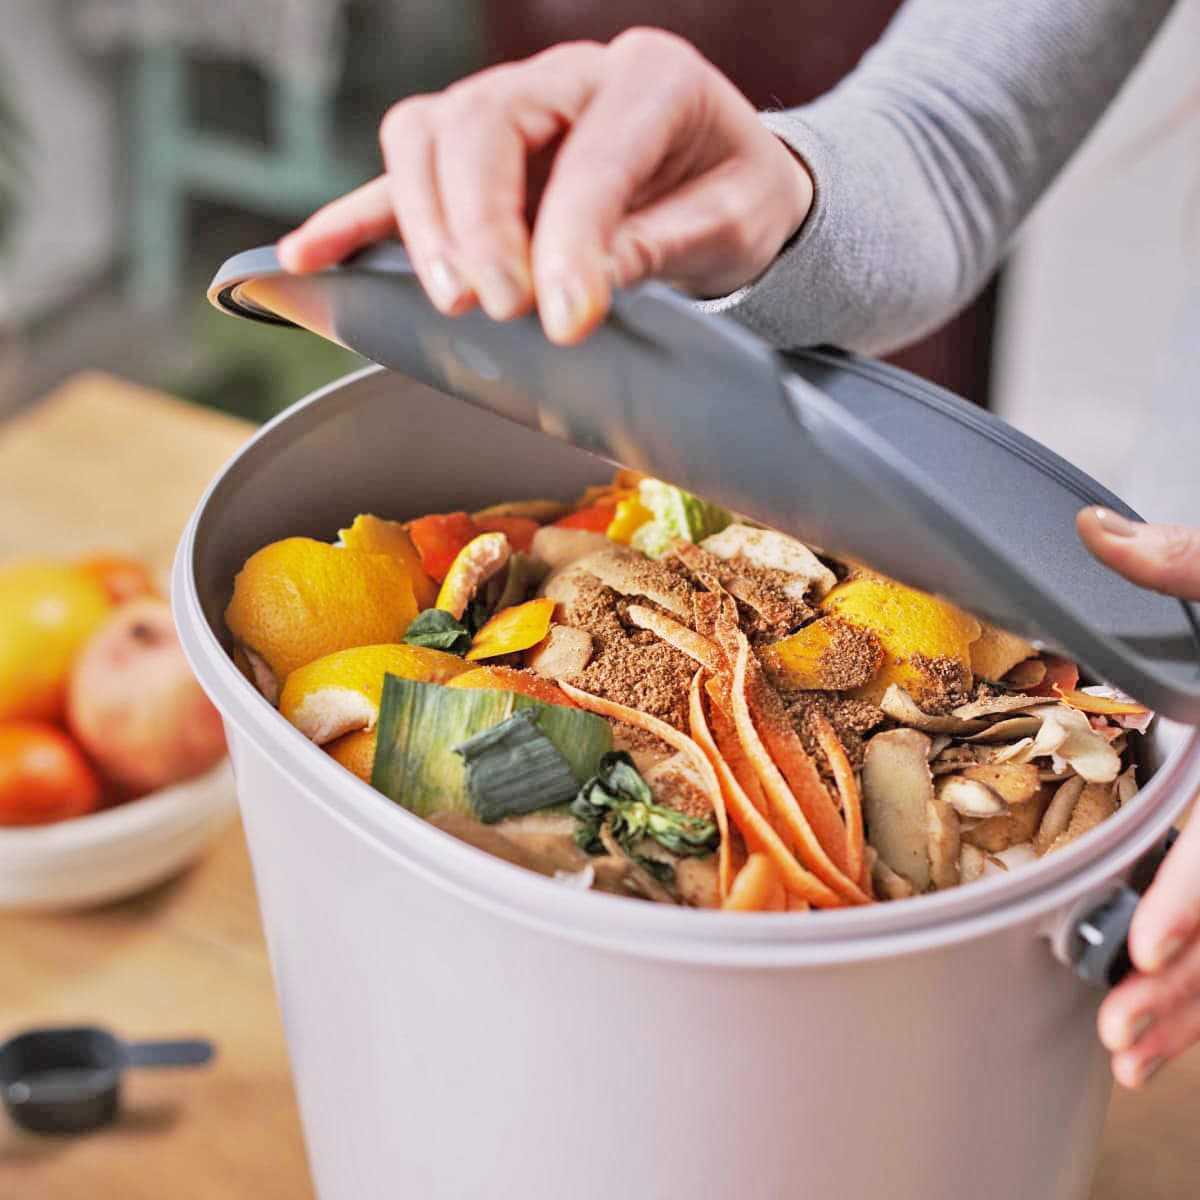 Zéro déchet : 10 façons d'intégrer un bac à compost à la cuisine